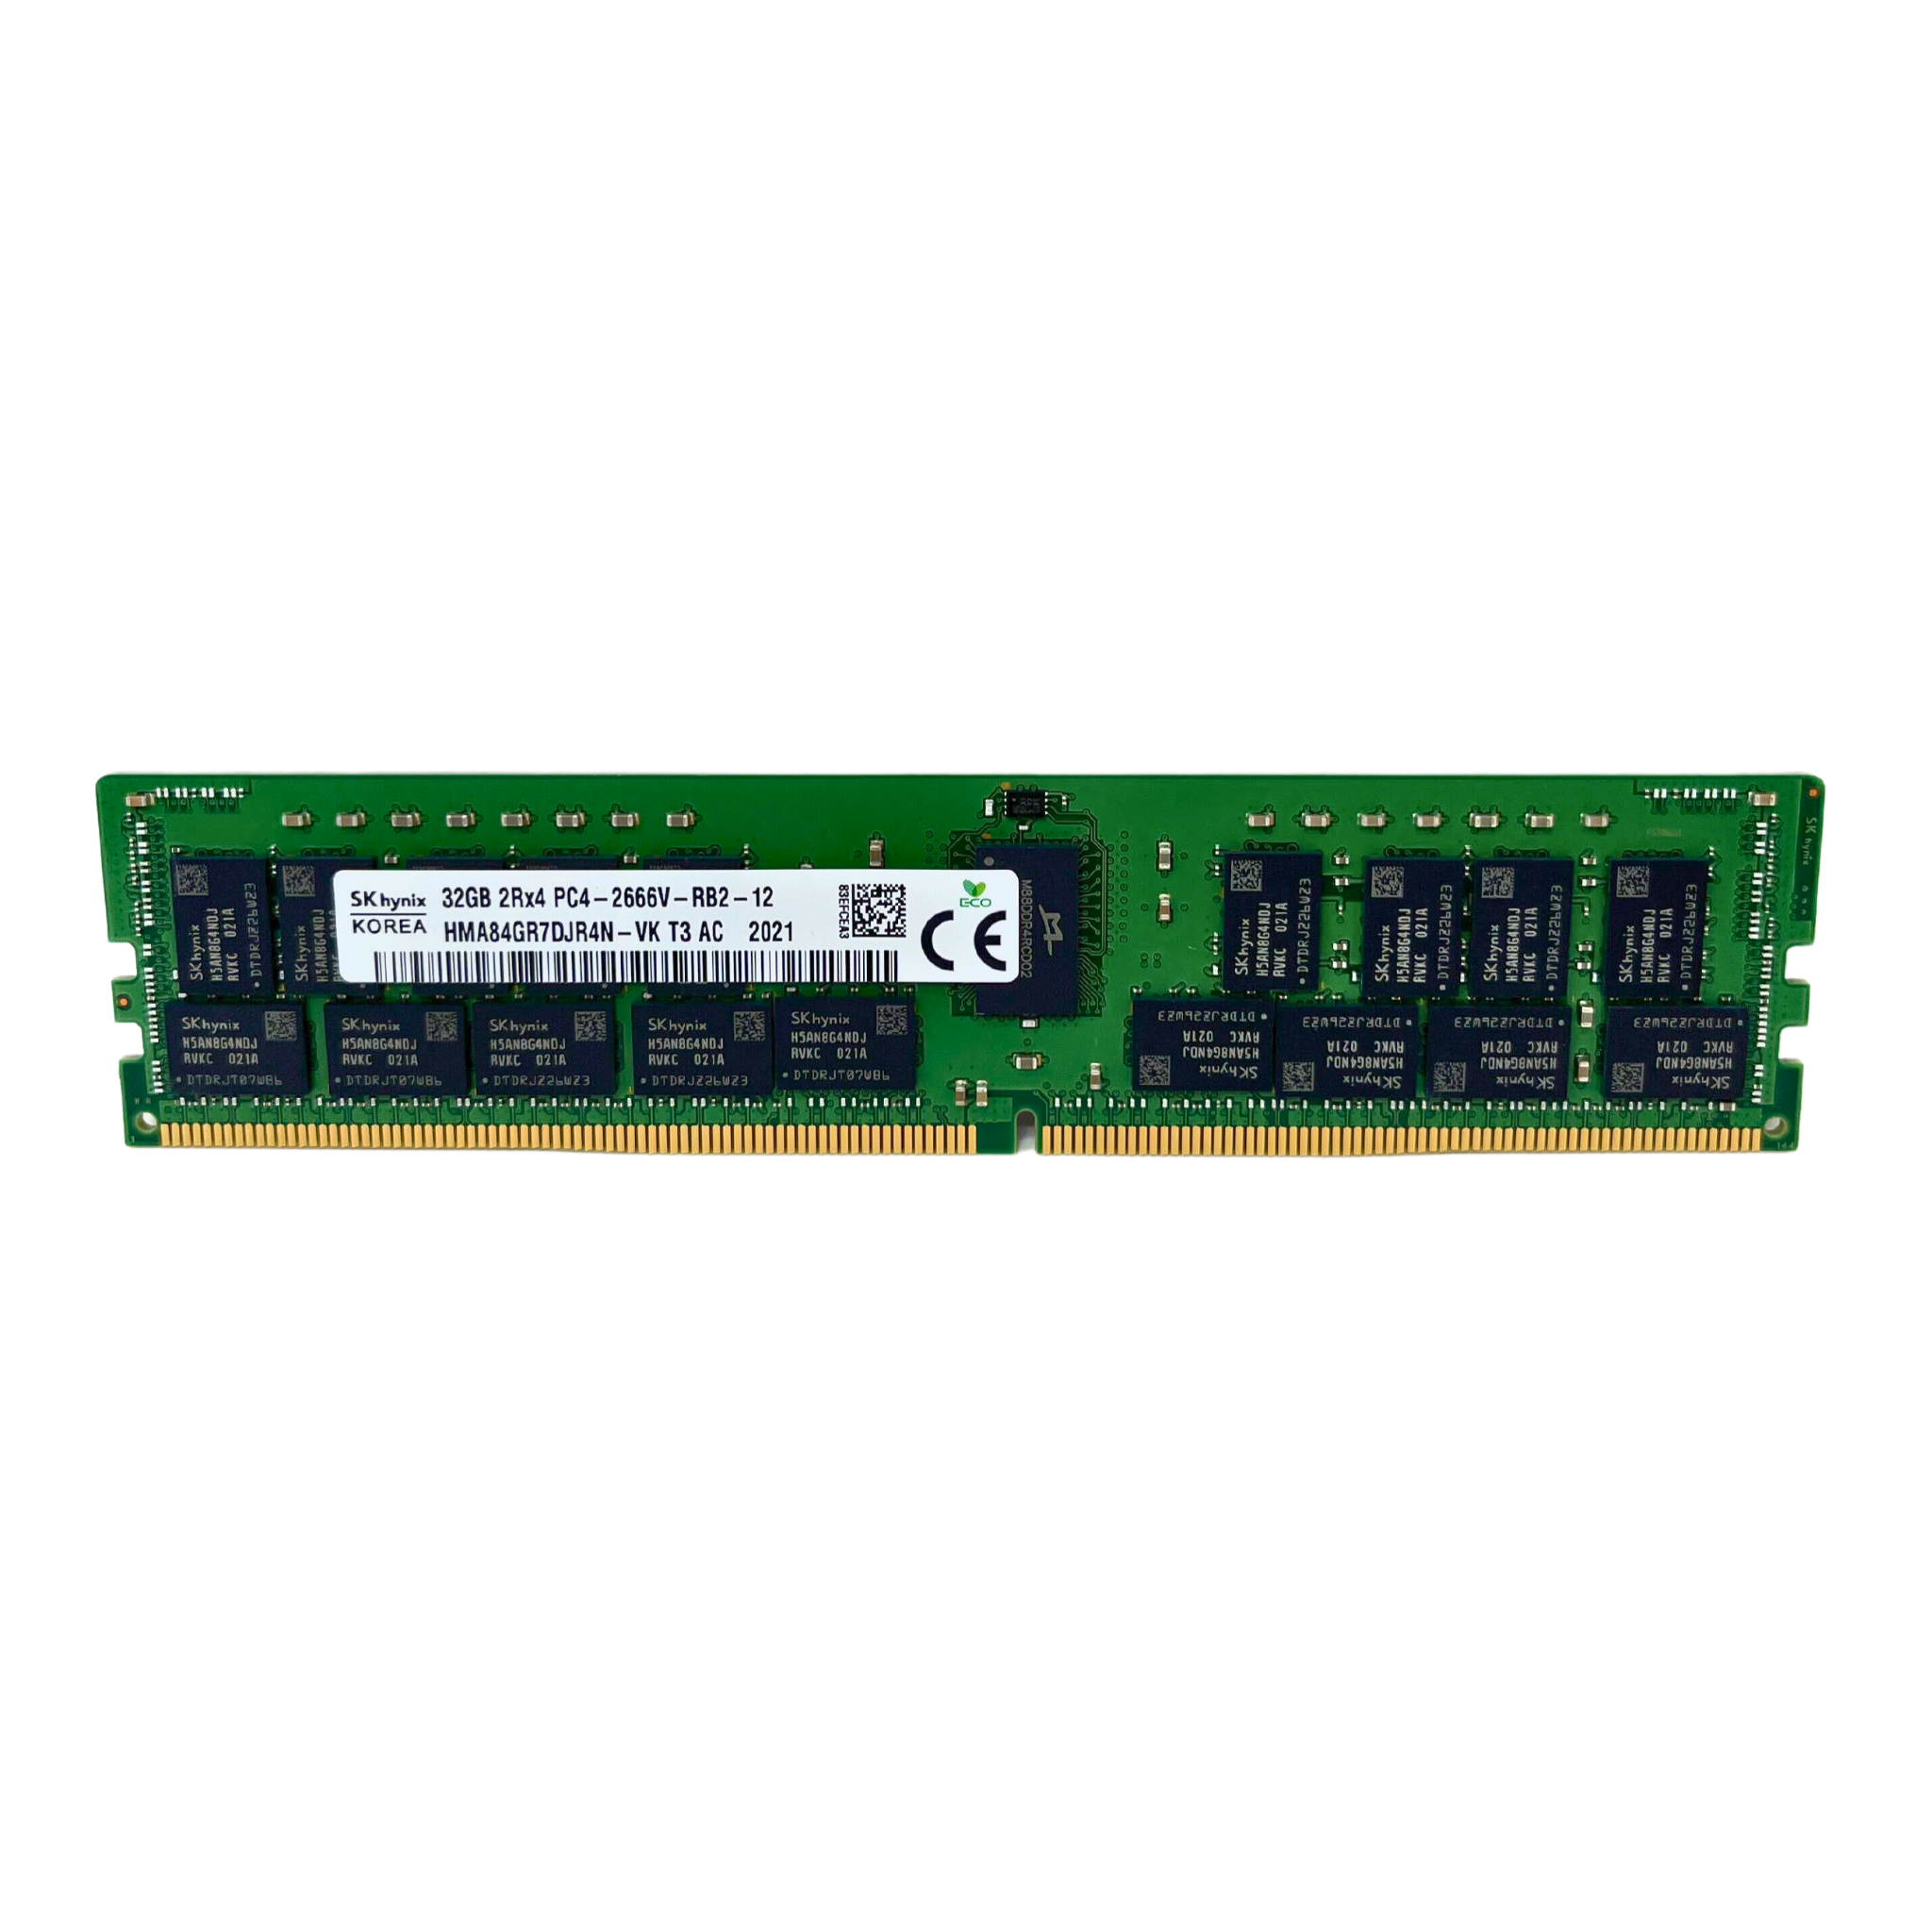 Hynix 32GB 2Rx4 PC4-2666V DDR4 ECC Registered Memory (HMA84GR7DJR4N-VK)